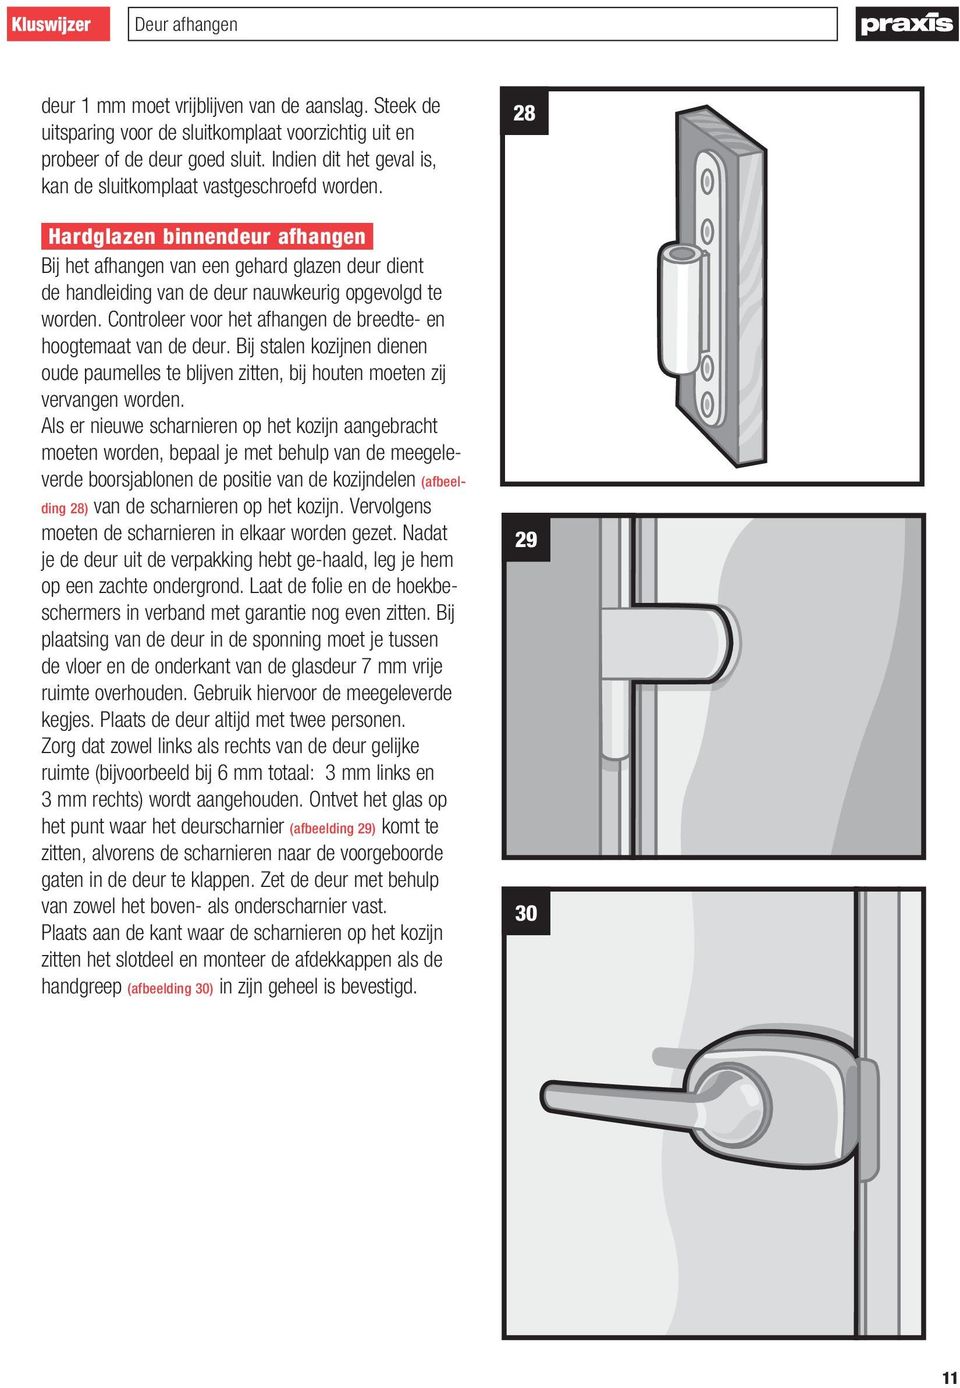 deur afhangen kluswijzer pdf free download